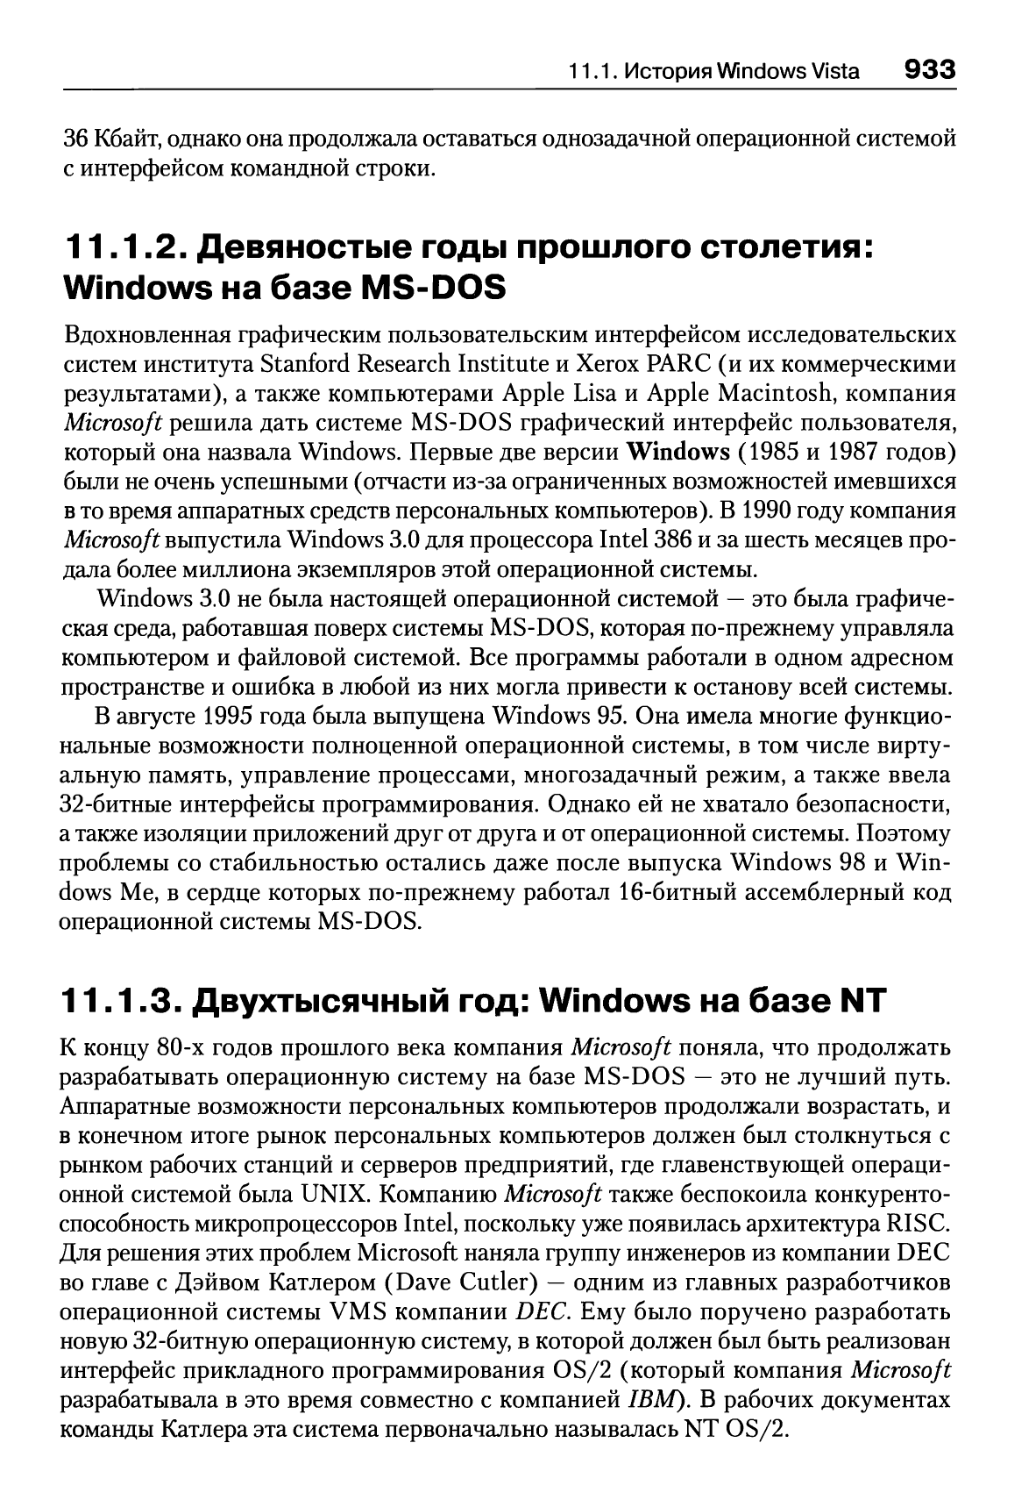 11.1.2. Девяностые годы прошлого столетия: Windows на базе MS-DOS
11.1.3. Двухтысячный год: Windows на базе NT